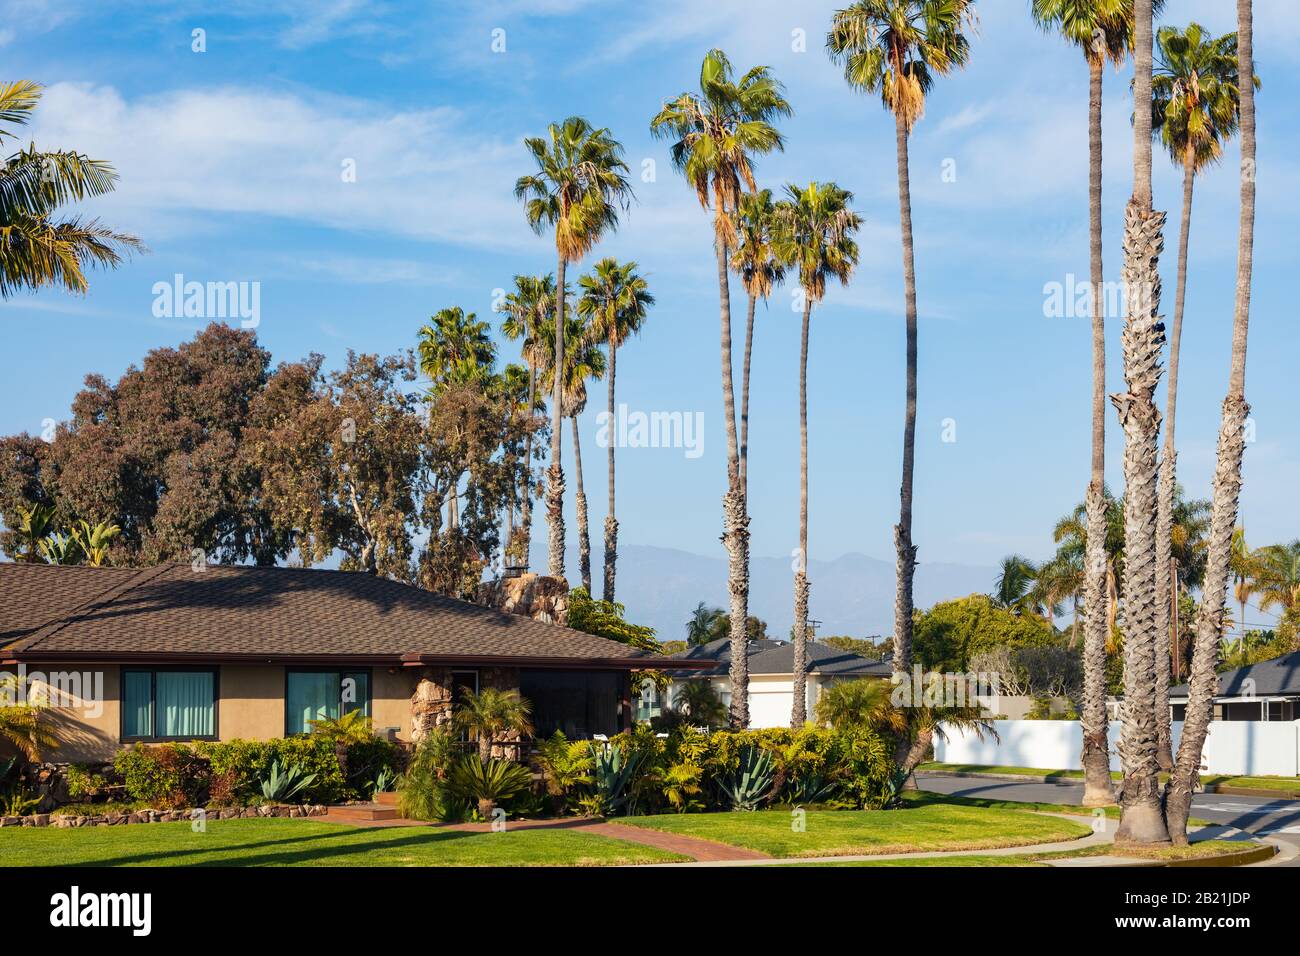 California Home Landschaftsbau an einer Straßenecke mit hohen Palmen entlang der Straße. Im Februar 2020 aus einem öffentlichen Raum übernommen. Stockfoto